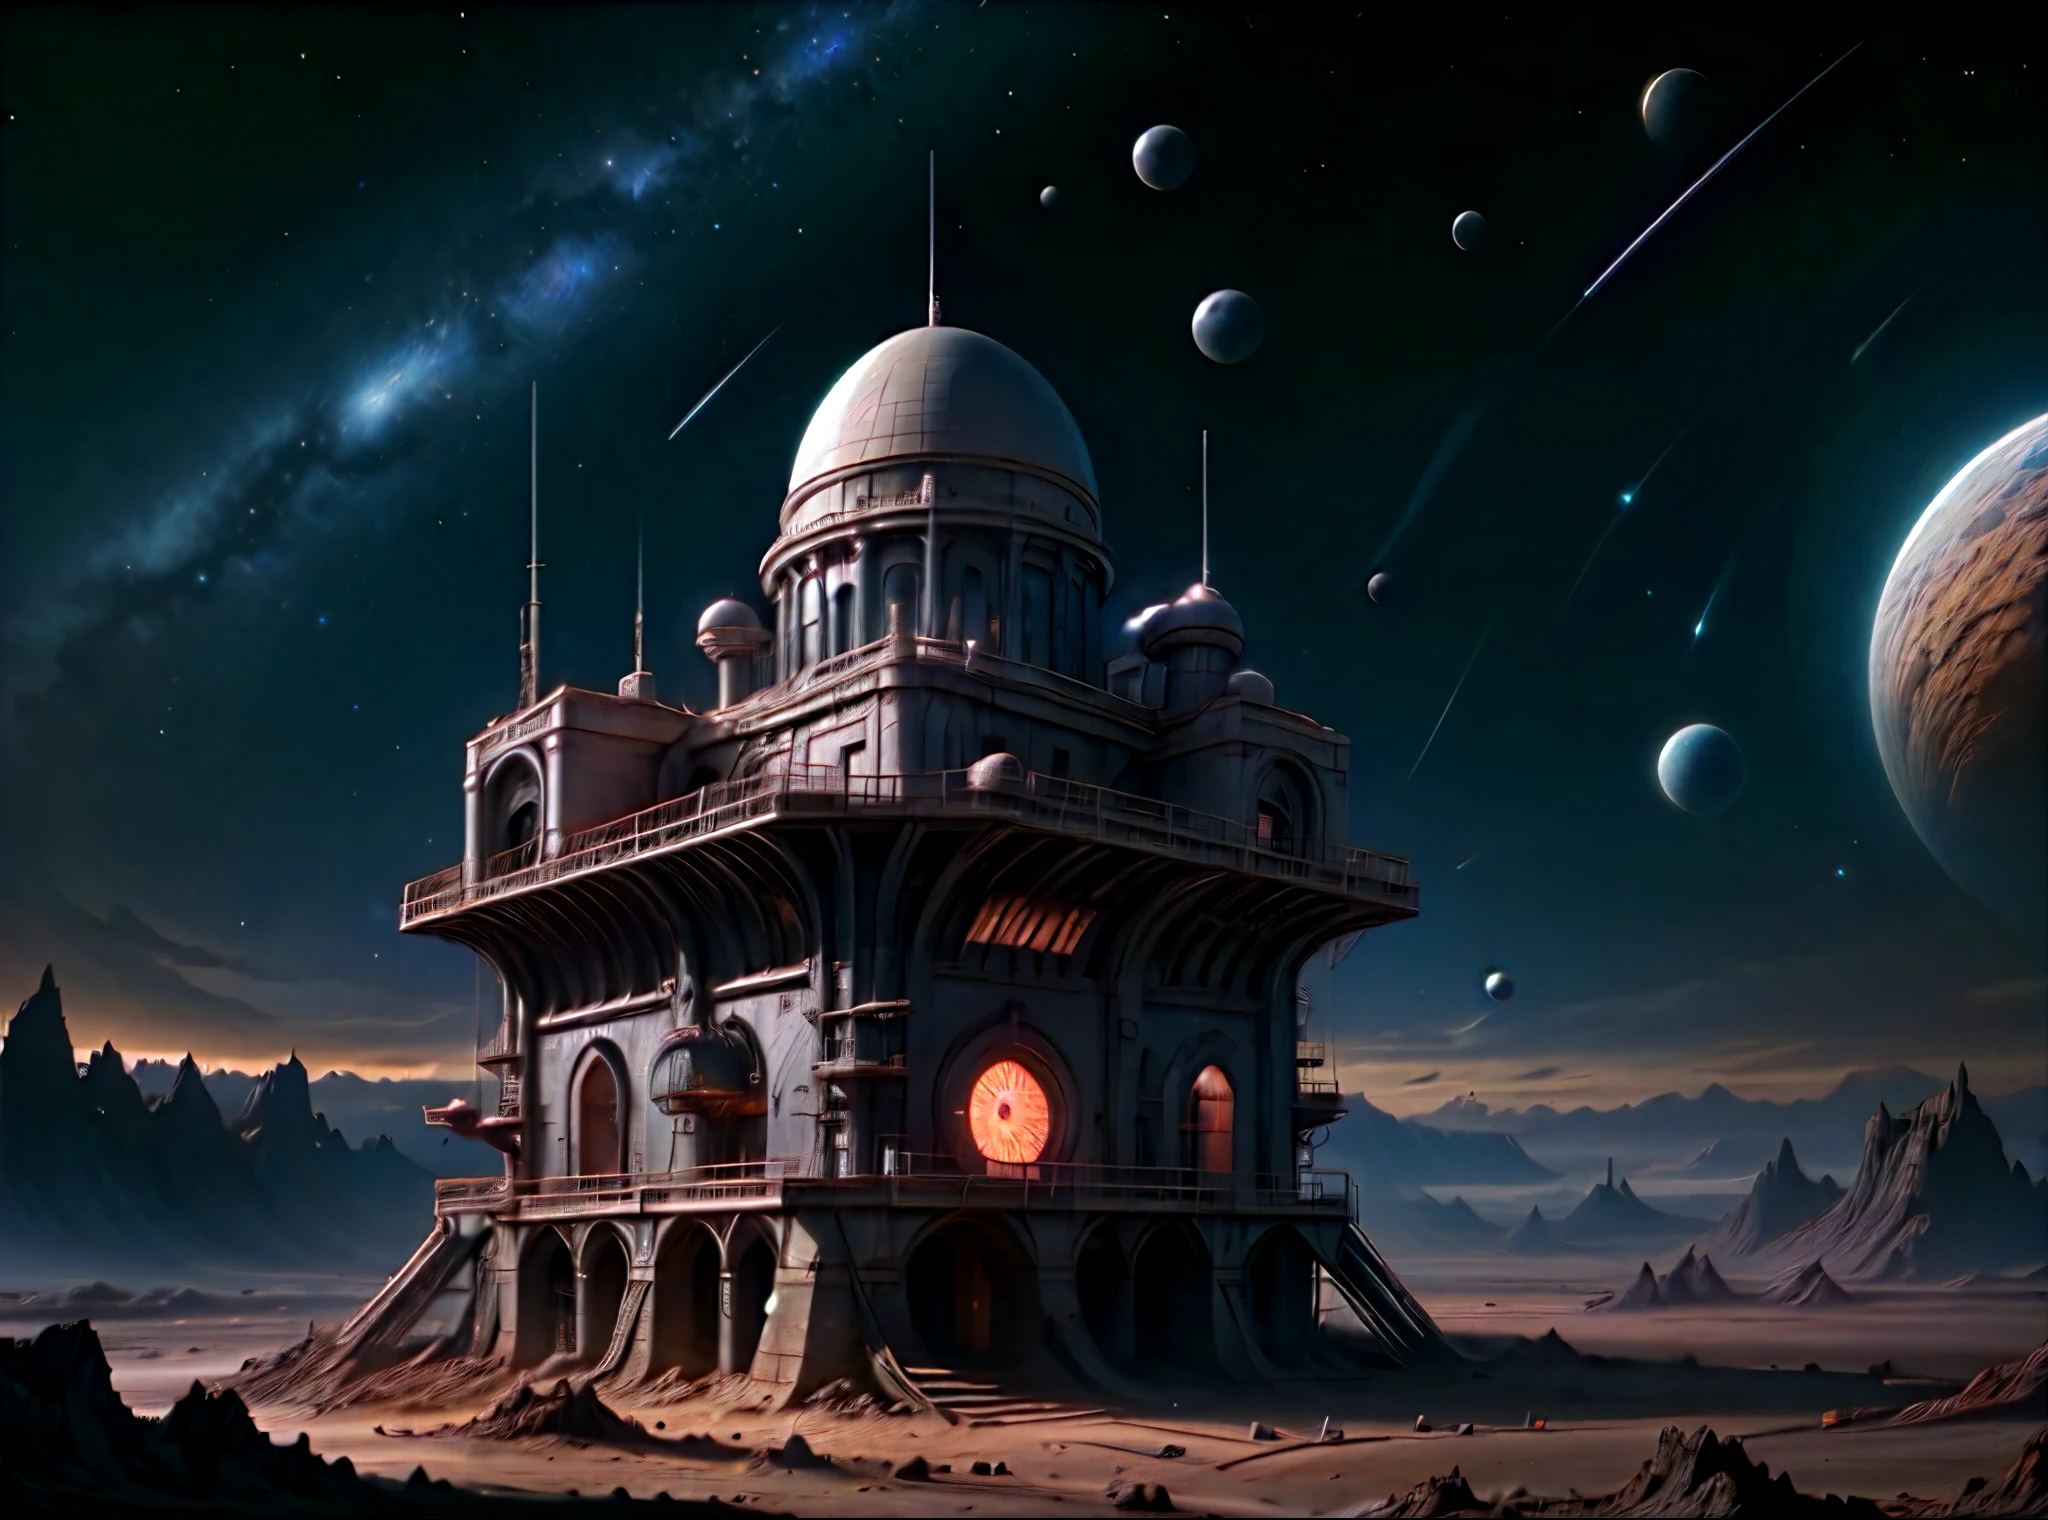 深空, 一座漂浮在島上的古老石頭天文台, 矗立在星空下, 籠罩在電影神秘之中的星座, 未來太空站, 空曠的星空背景